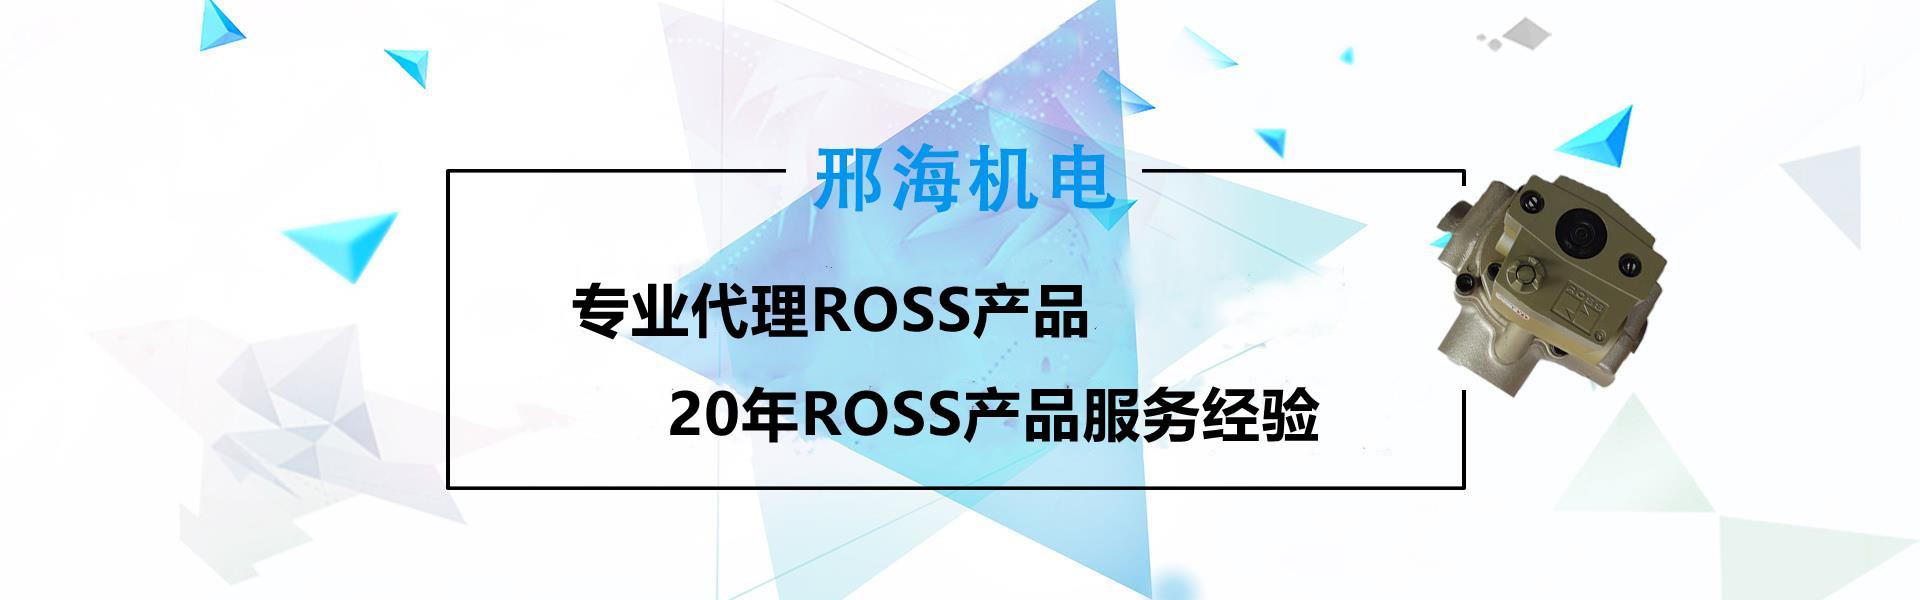 罗斯ross代理价批发厂家供应商W6077B4401 DC24V